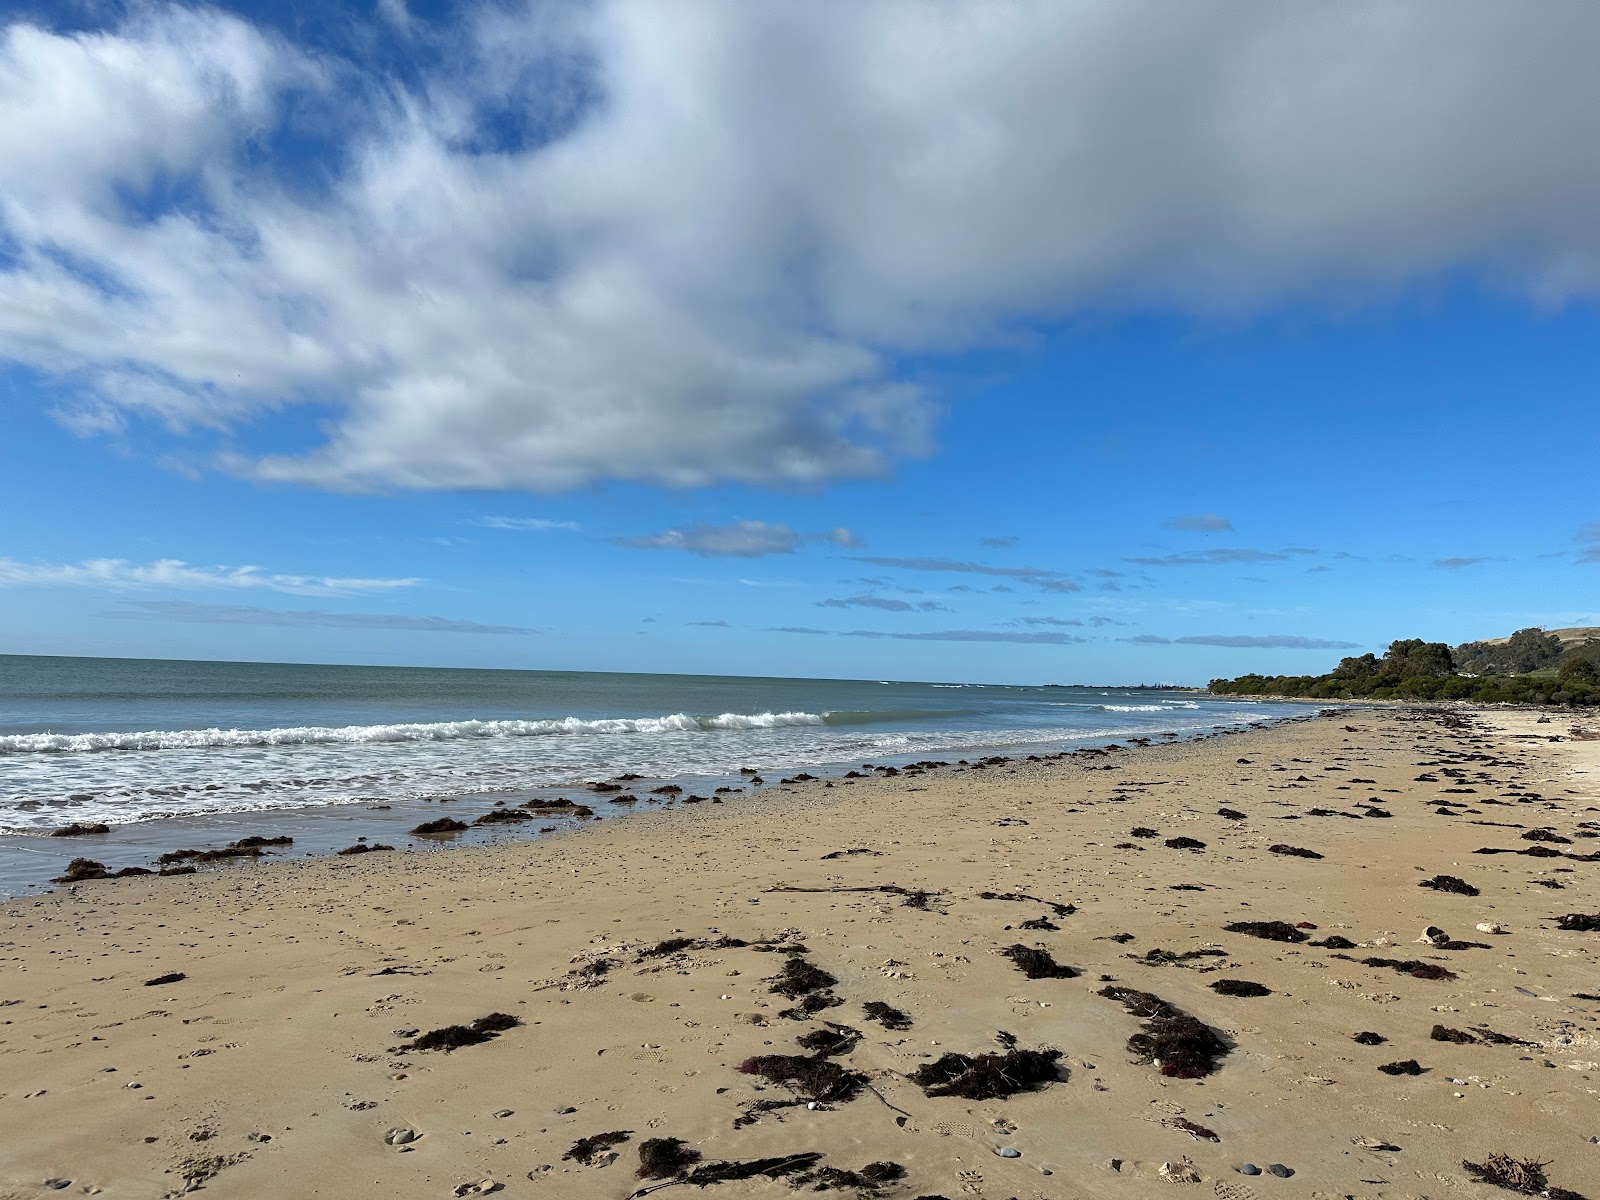 Zdjęcie Somerset Beach z powierzchnią jasny piasek